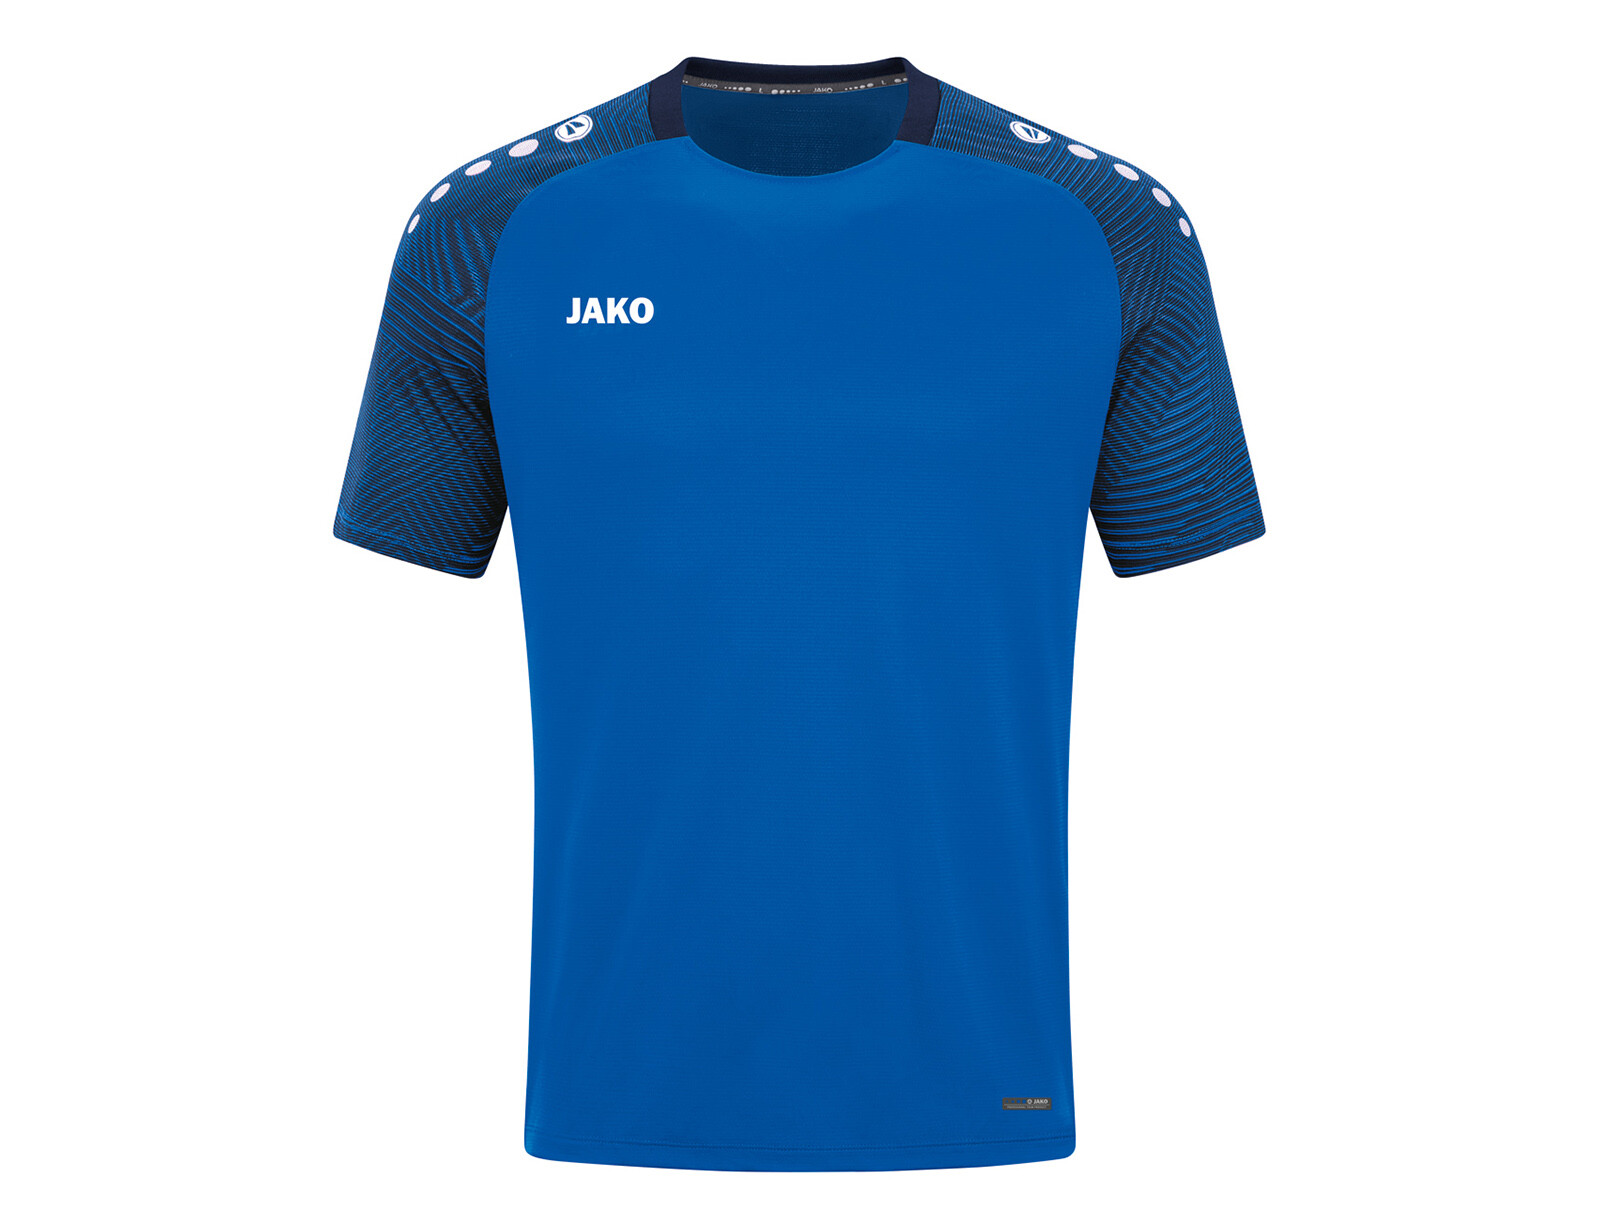 Jako - T-shirt Performance - Blauw Voetbalshirt Heren